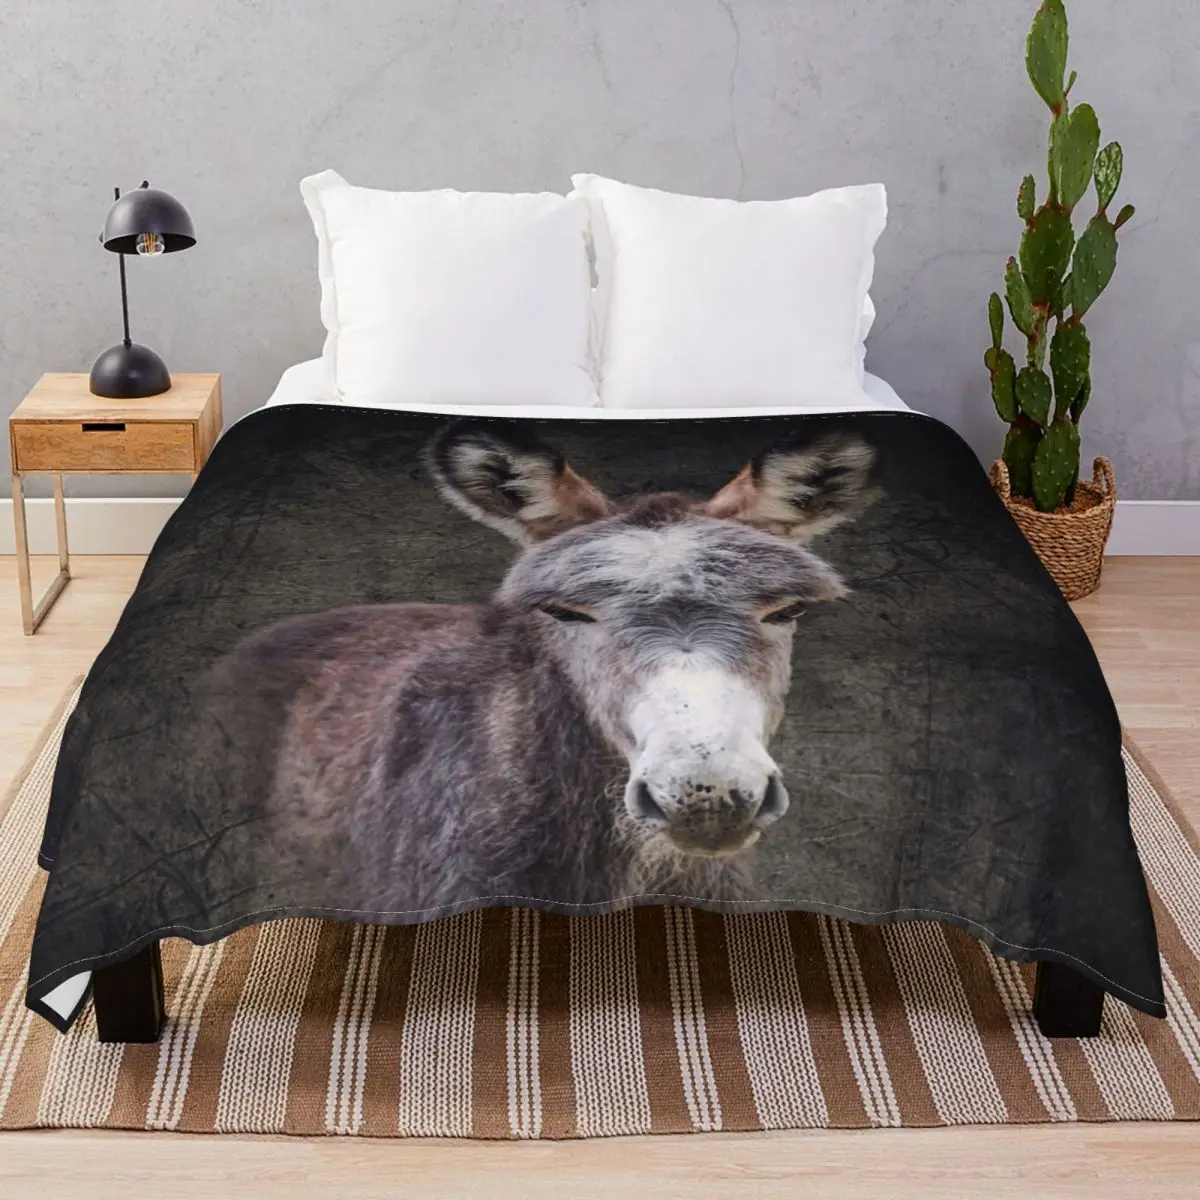 Donkey Foal Mattheo Blanket Velvet Plush Print Warm Throw Blankets for Bed Sofa Camp Office